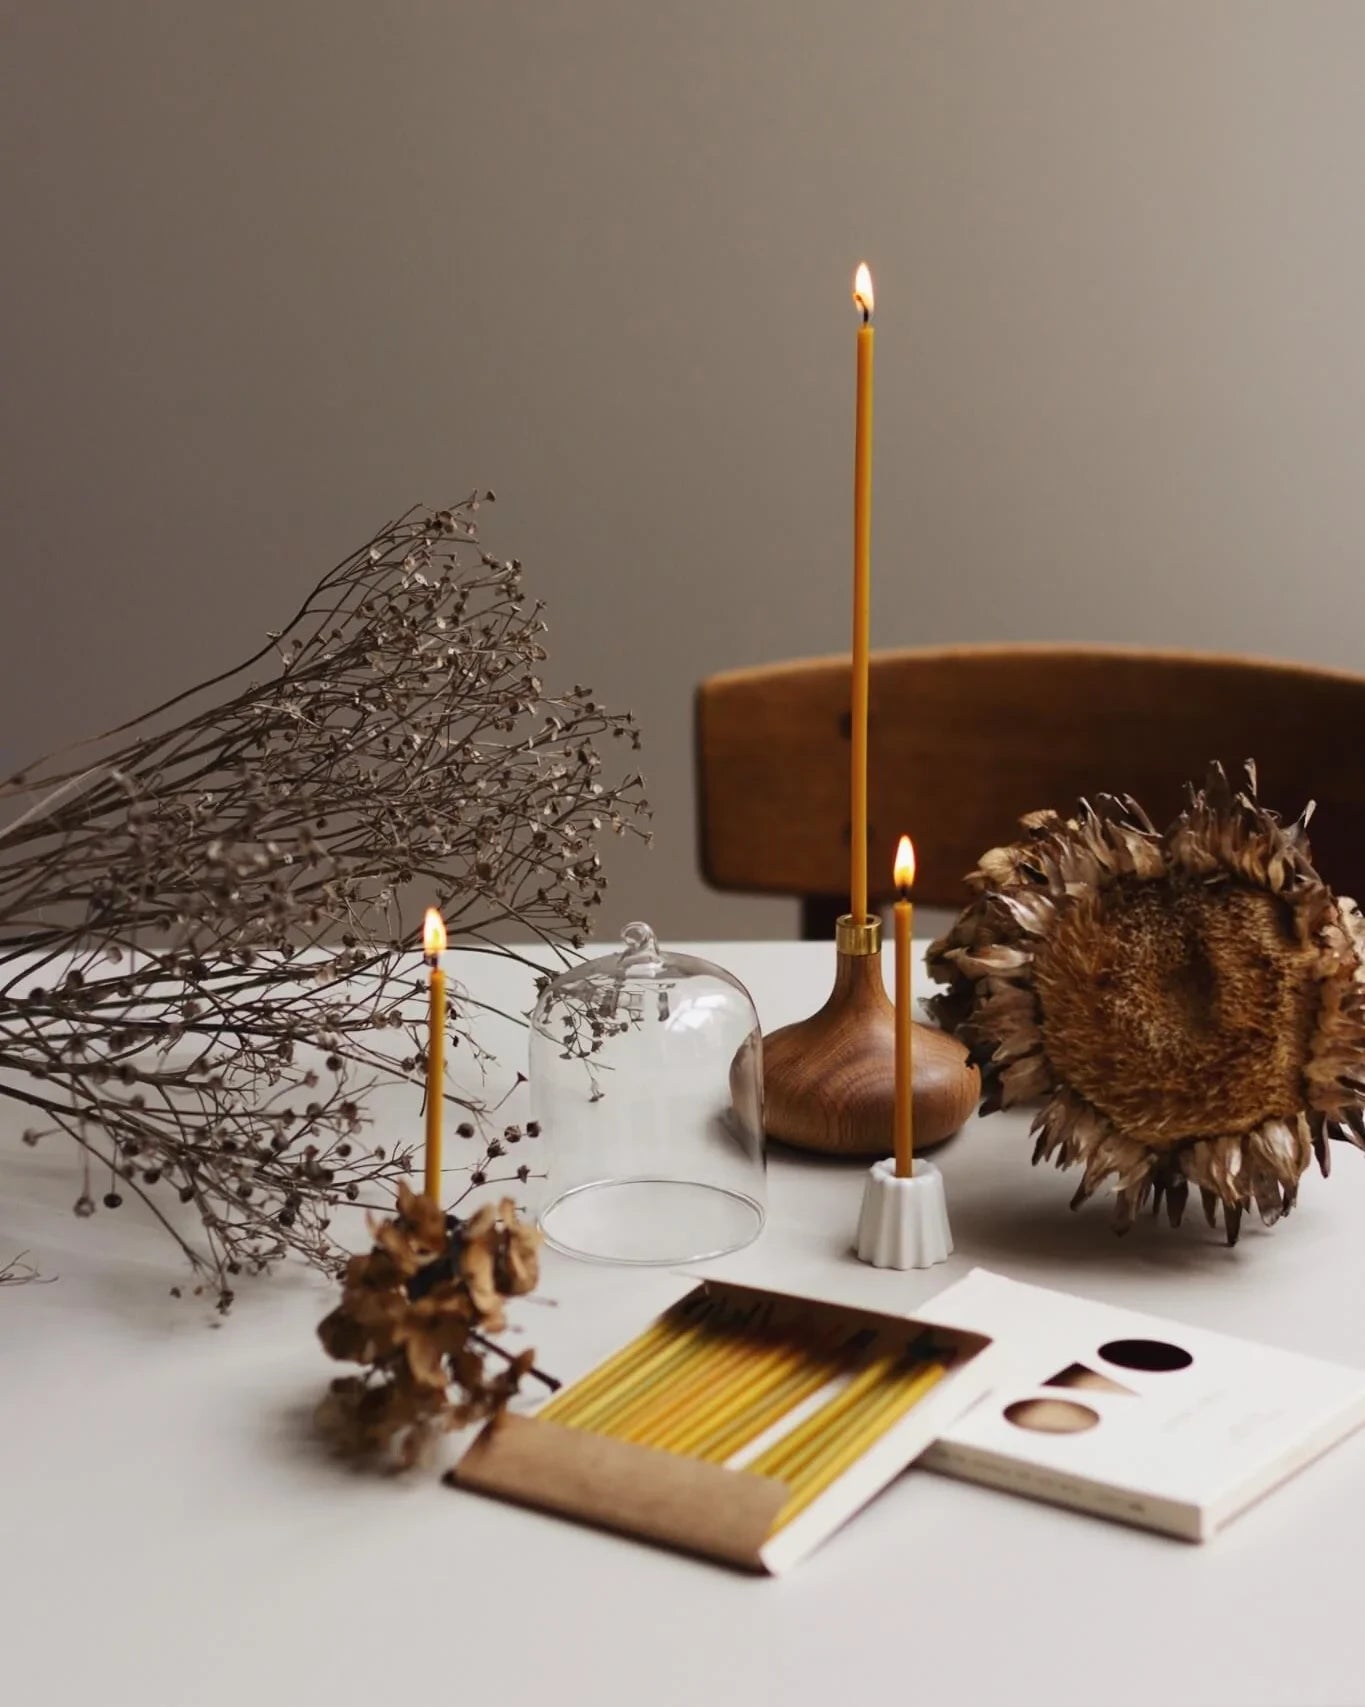 Handgjorda ljusstakar av ek och keramik står på ett bord med bivax ljus.